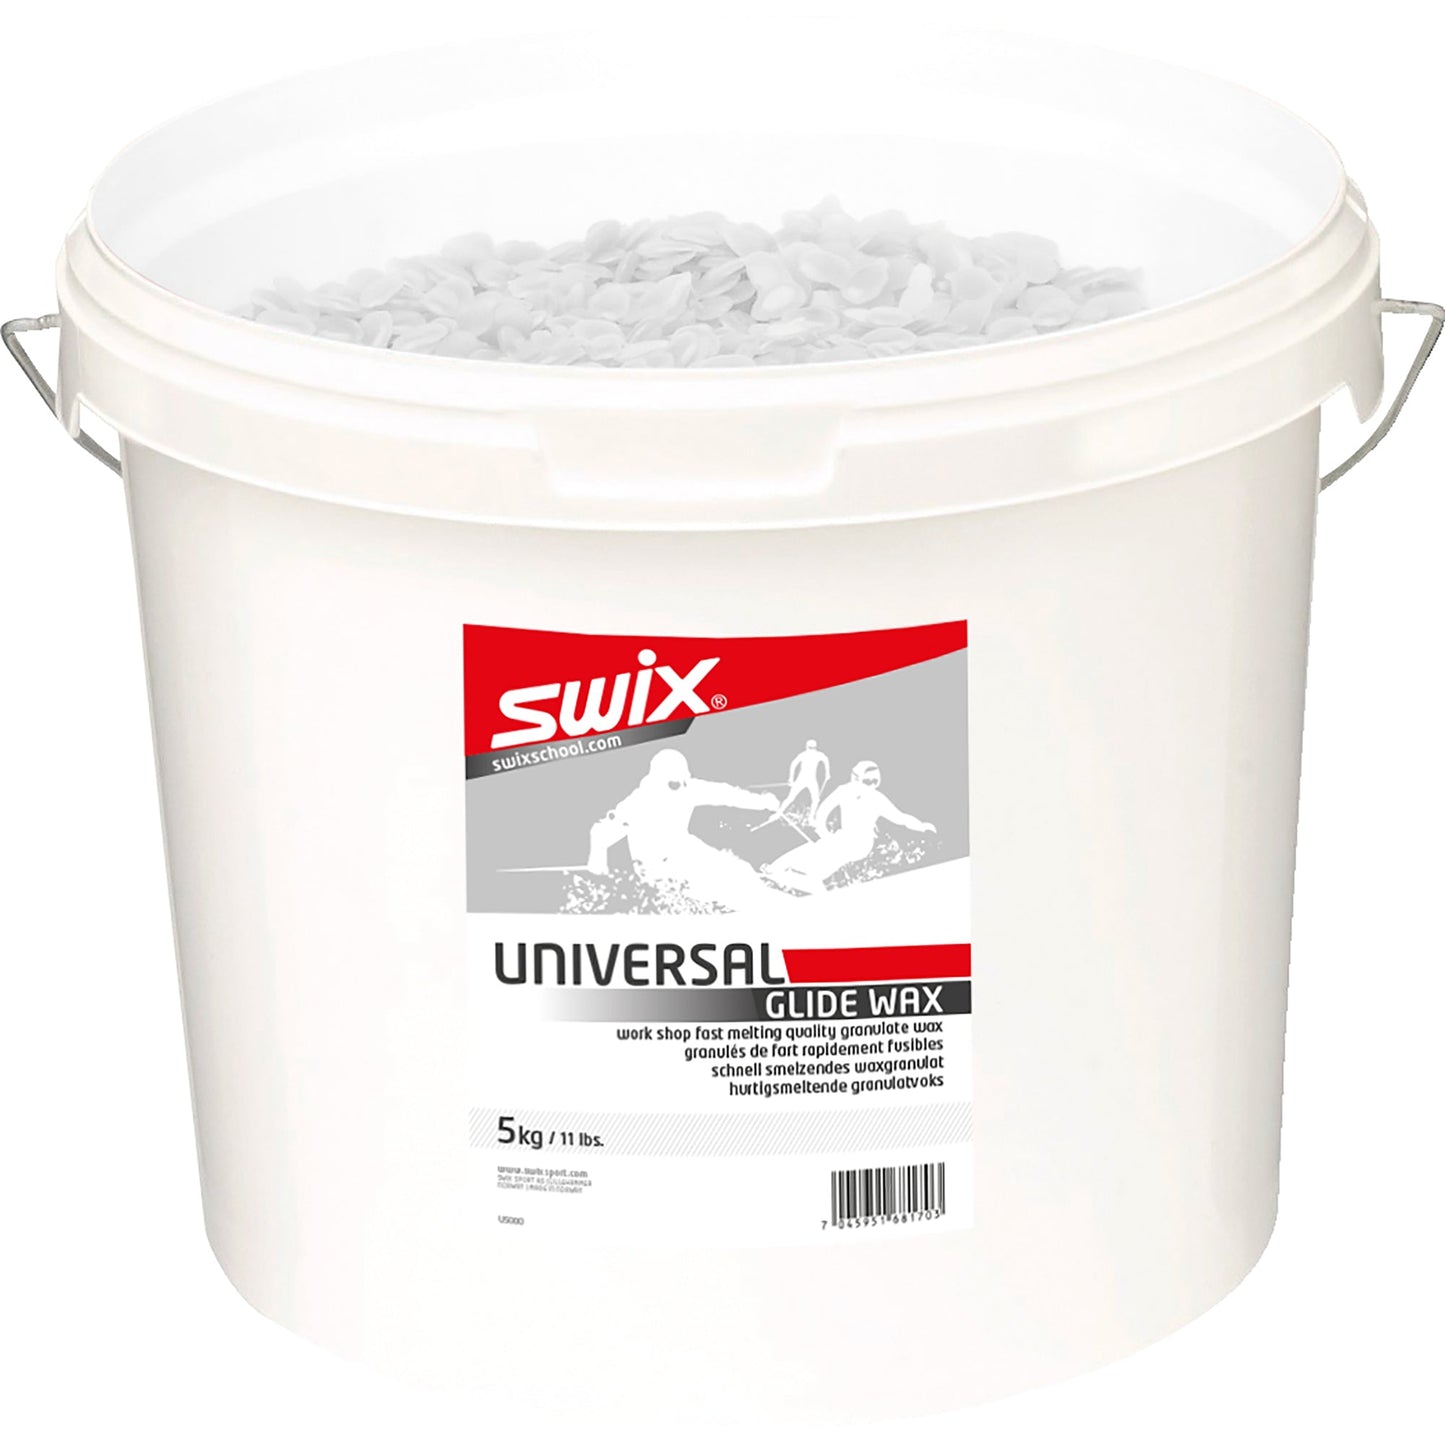 SWIX Universal Work Shop Wax Pellets 5kg